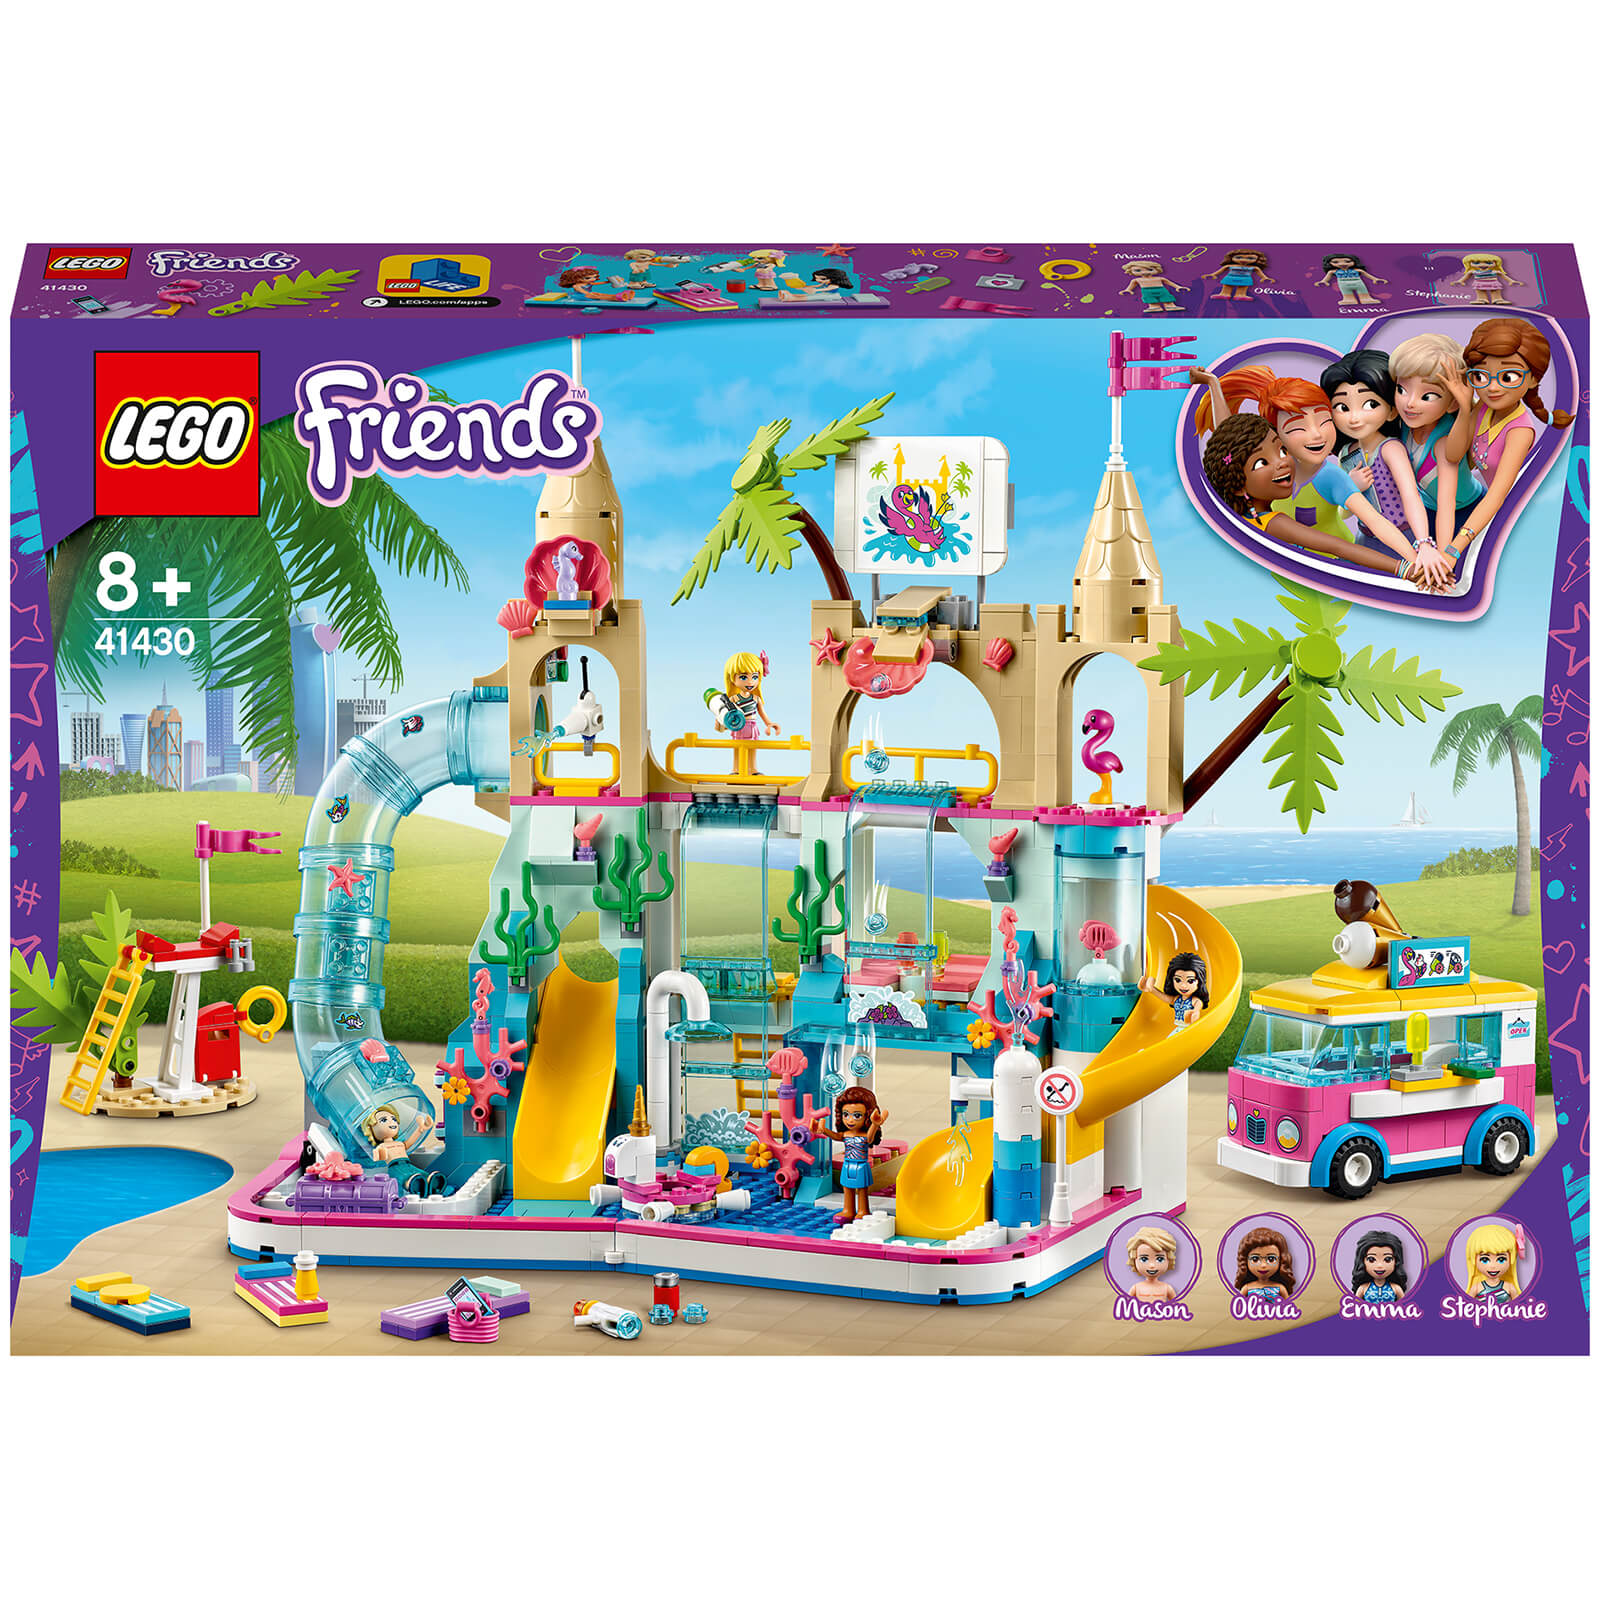 LEGO Friends: Summer Fun Water Park Resort Play Set (41430)